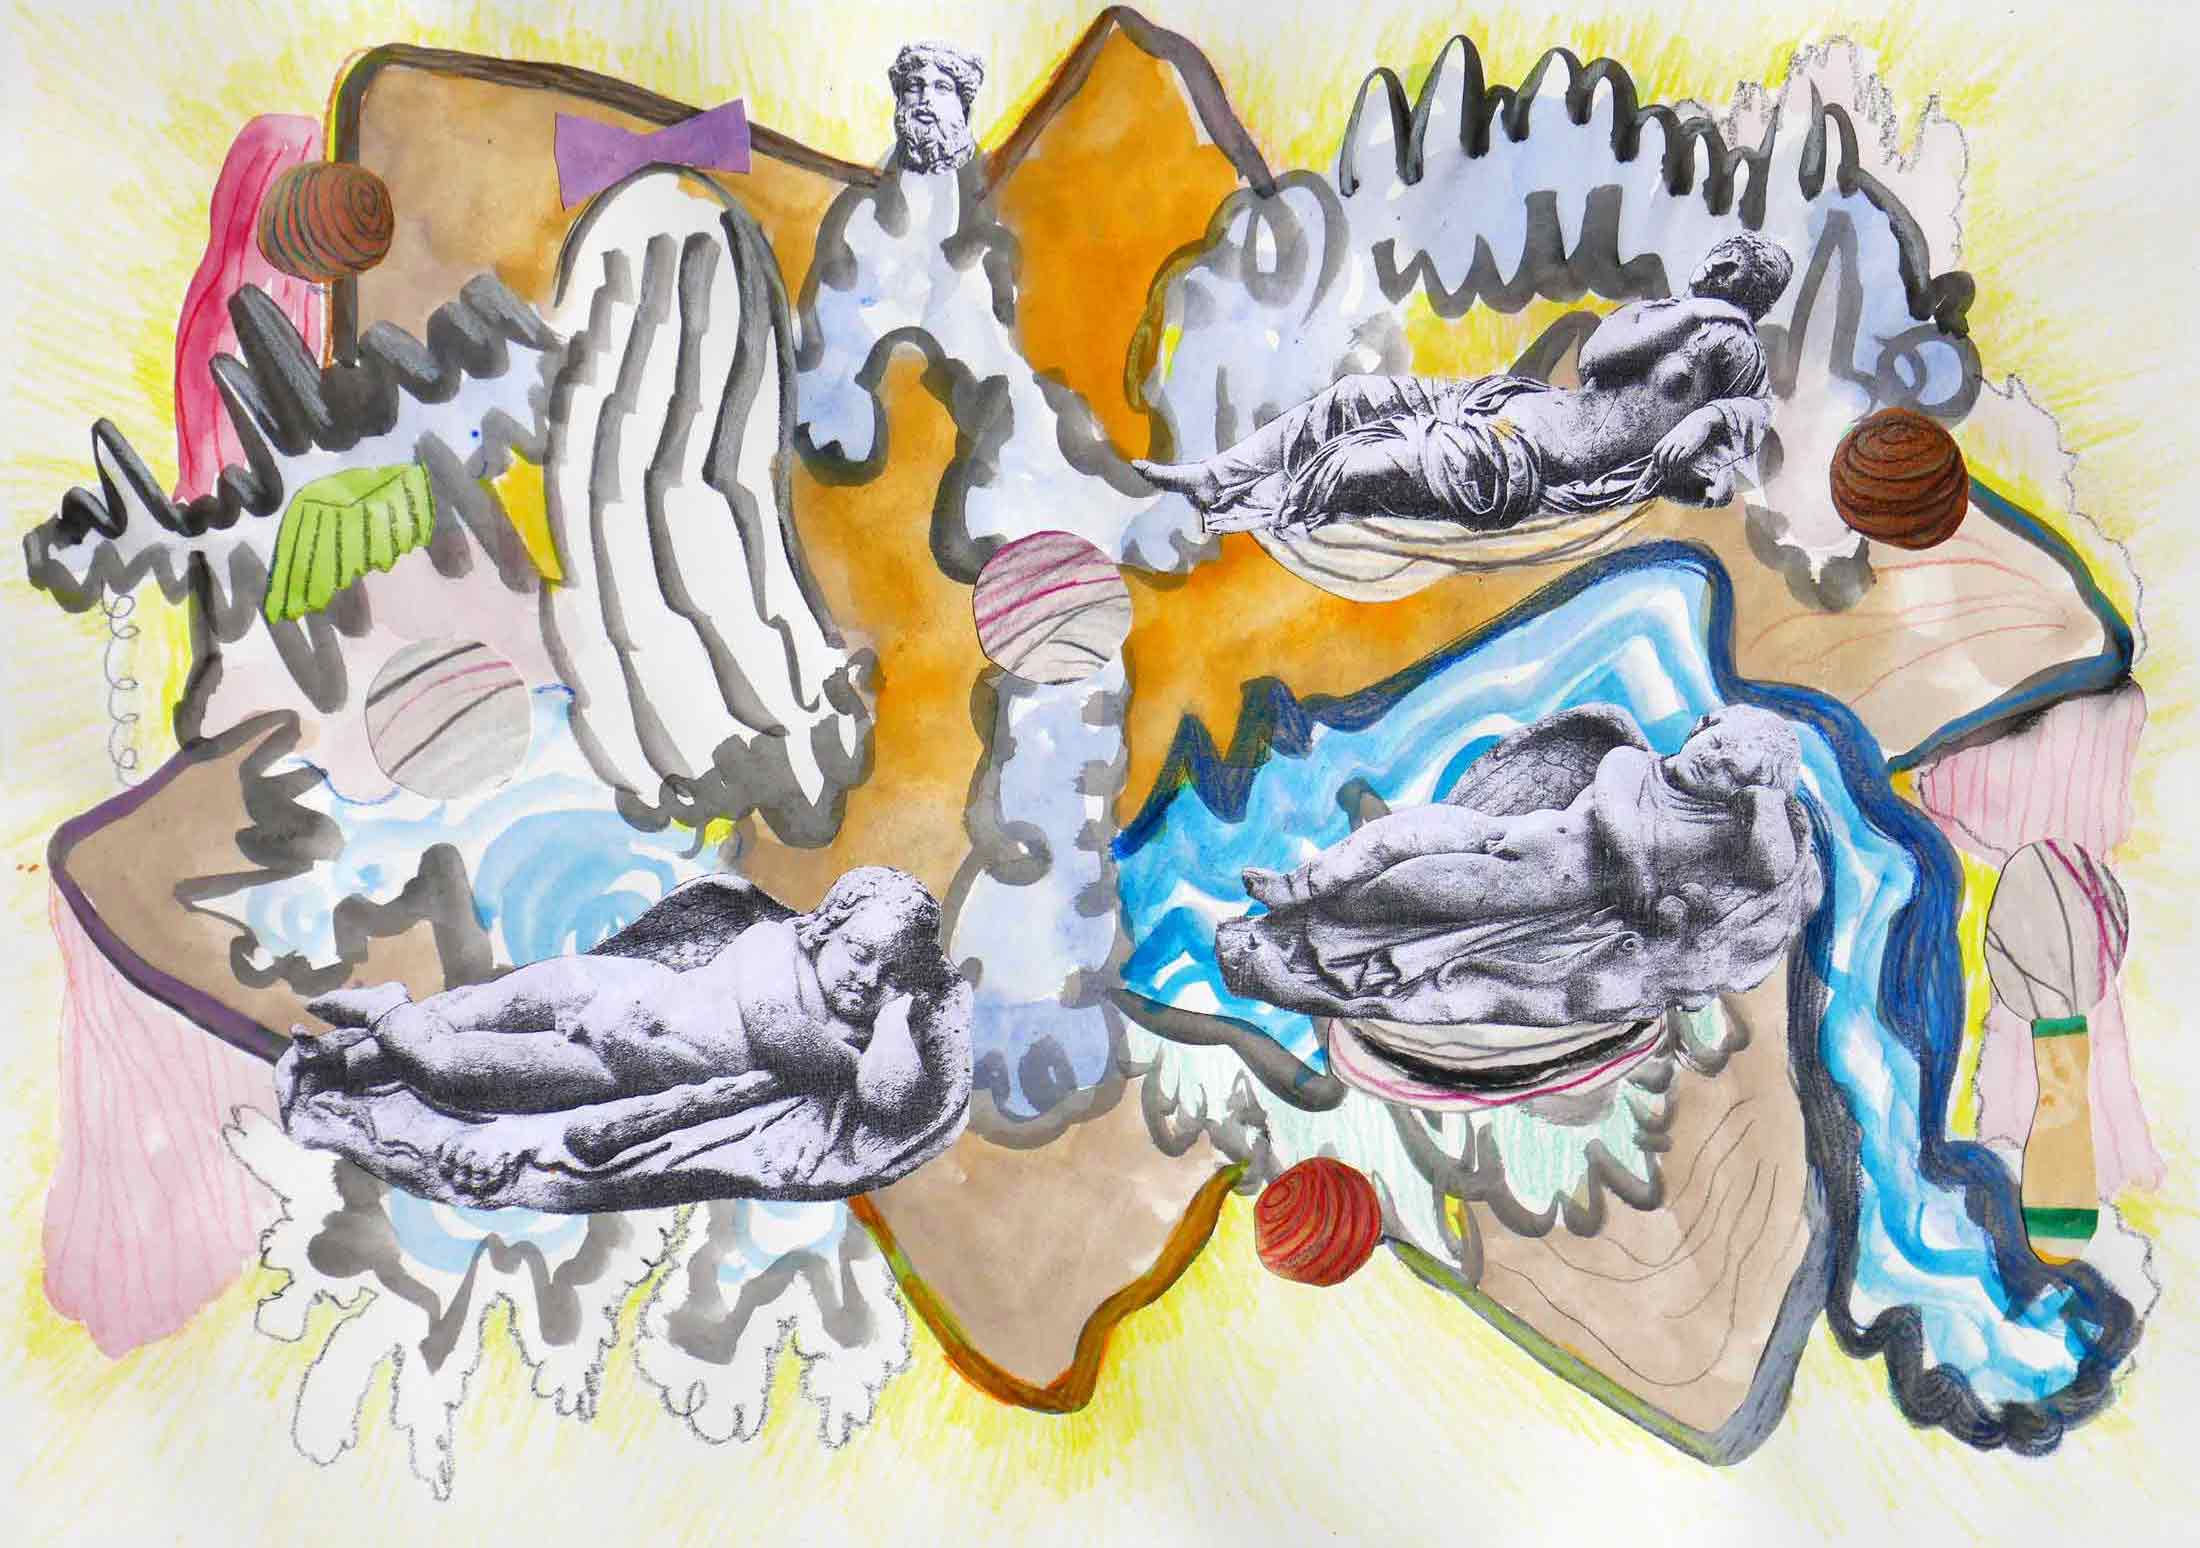   Ruïnes (Ruins)  collage; potlood, fotokopieën, aquarel, gouache 29 x 42 cm, 2018 